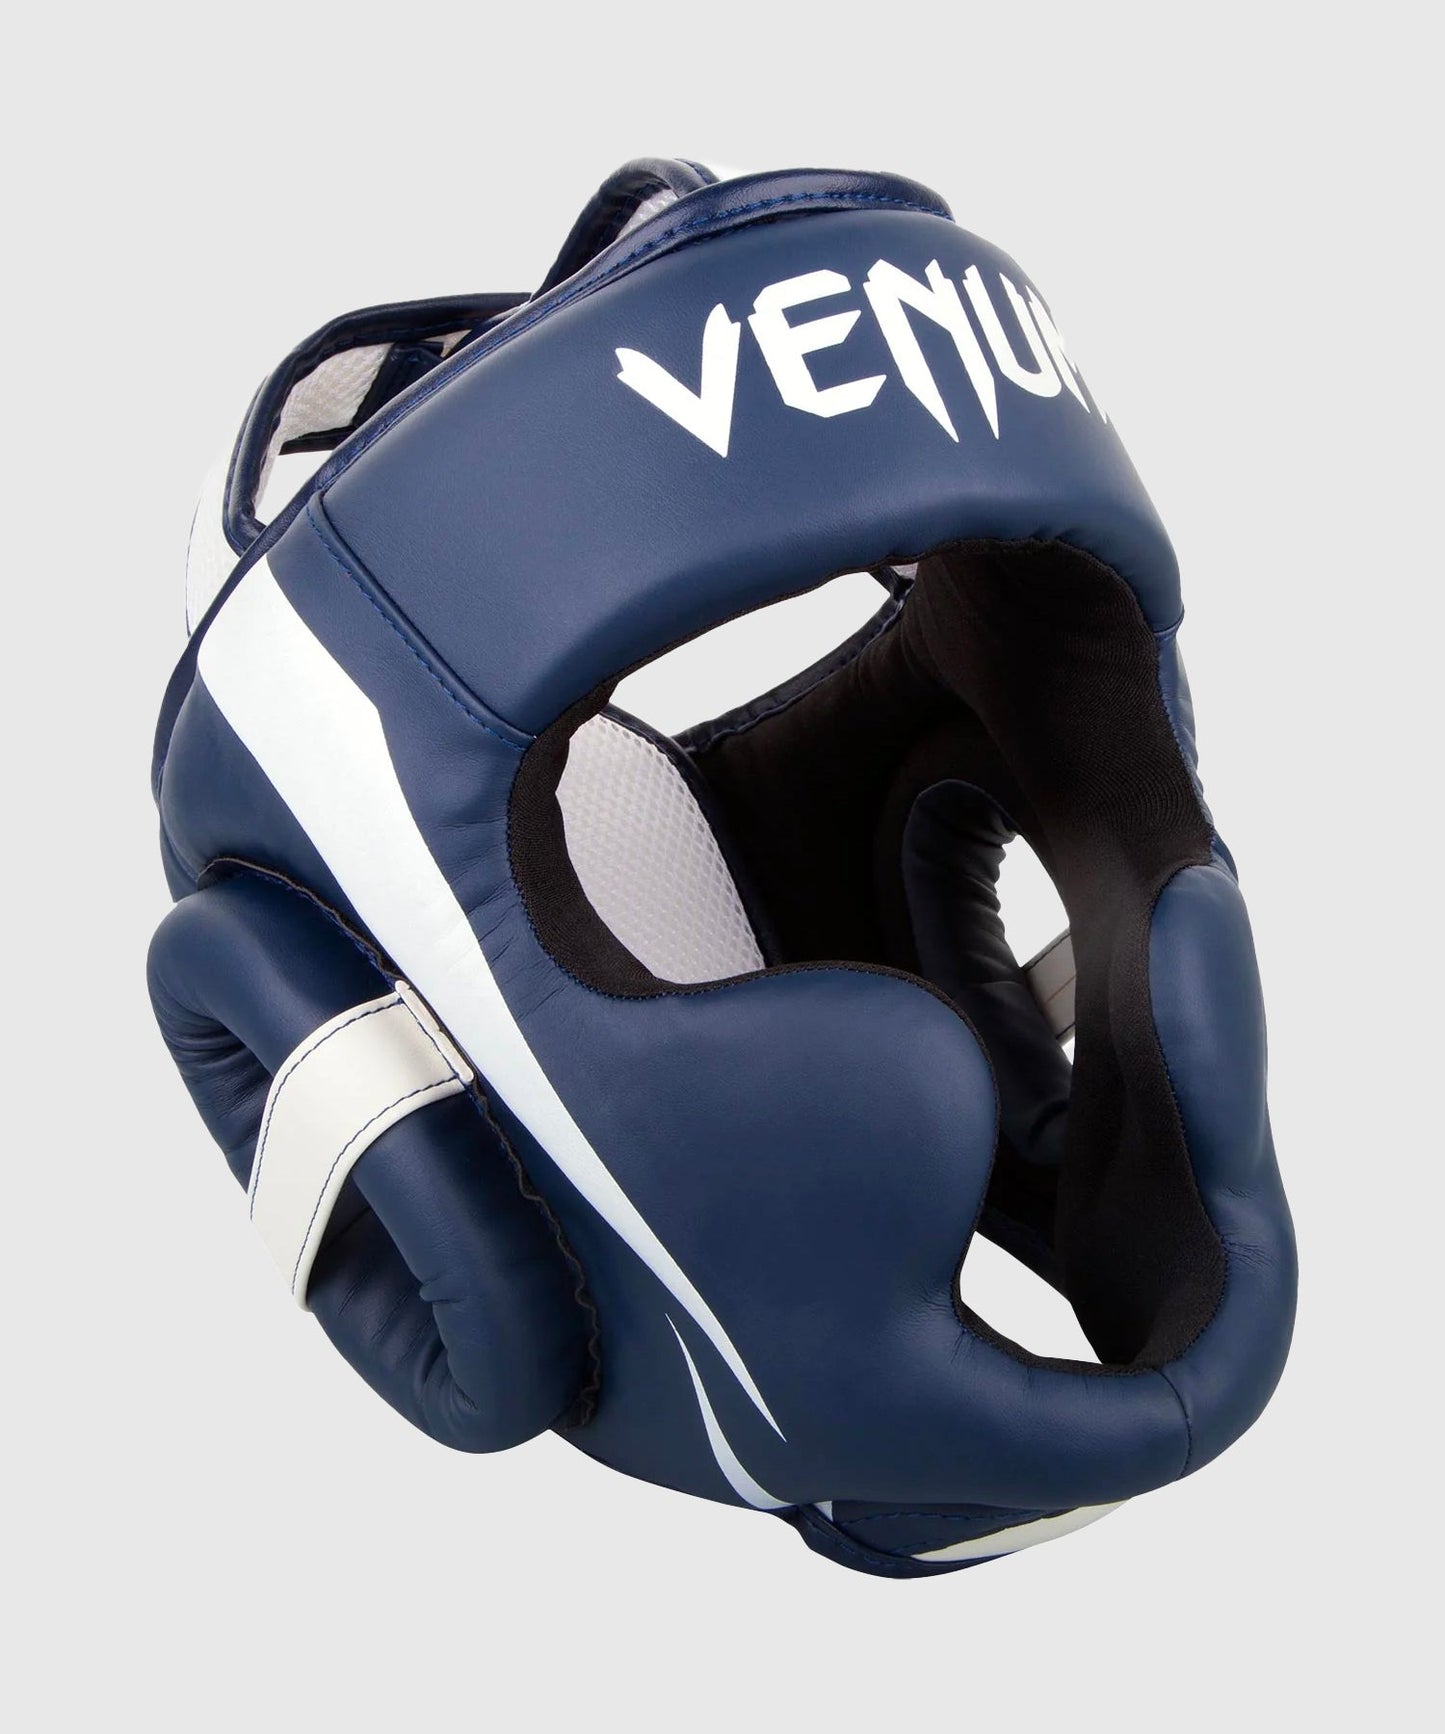 Venum Elite hoofdbeschermer - Mariblauw/Wit